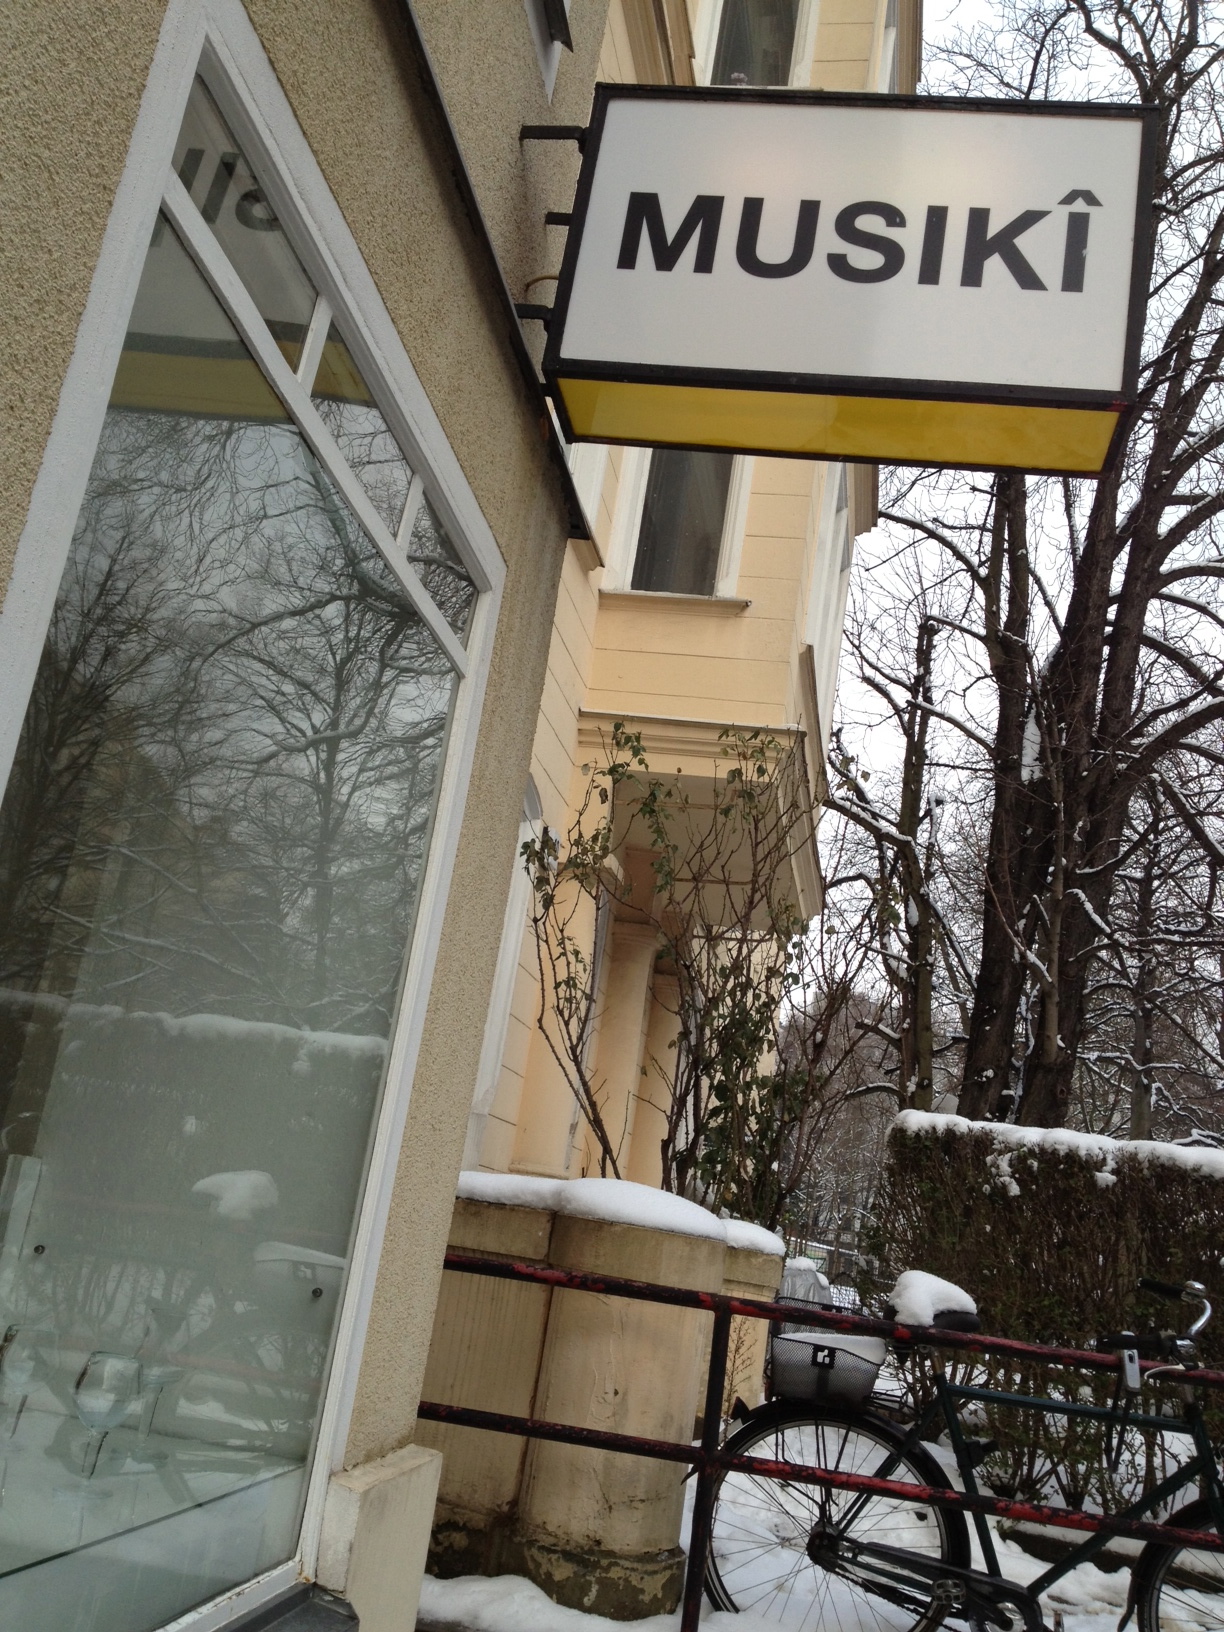 Show: “Musıkî Müzik“ at Gelbe Musik-Berlin, part of MaerzMusik, until 27.04.2013